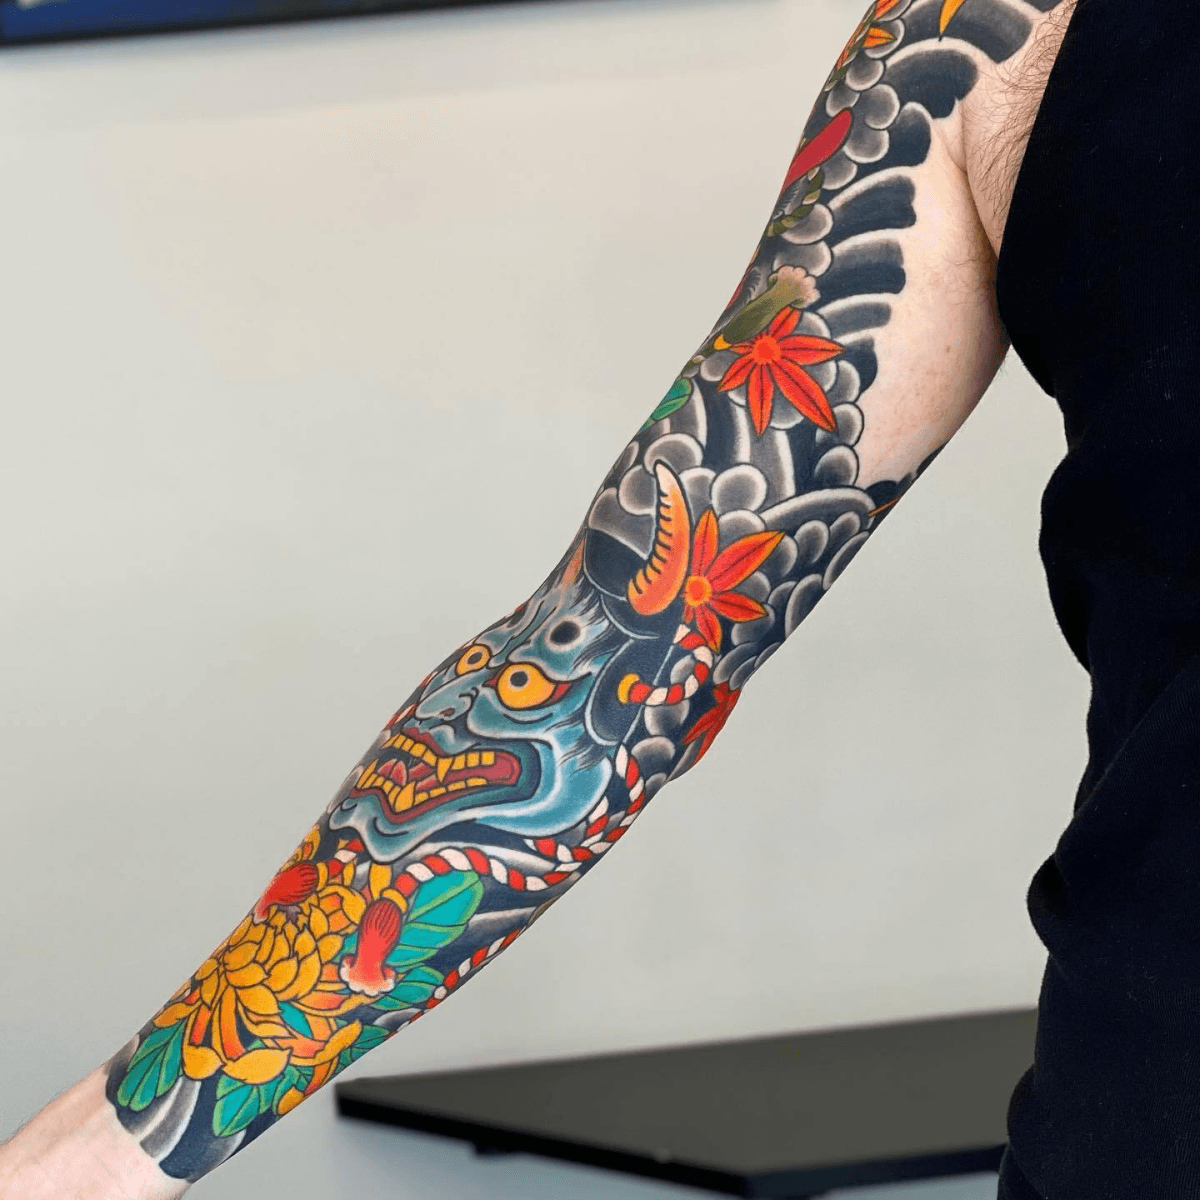 Tattoo Ideas - Ornamental Phoenix hip tattoo by Viki, owner at PandaInk  Tattoo Studio in Warsaw, Poland. https://tattoo-ideas.com/phoenix-hip/ |  Facebook